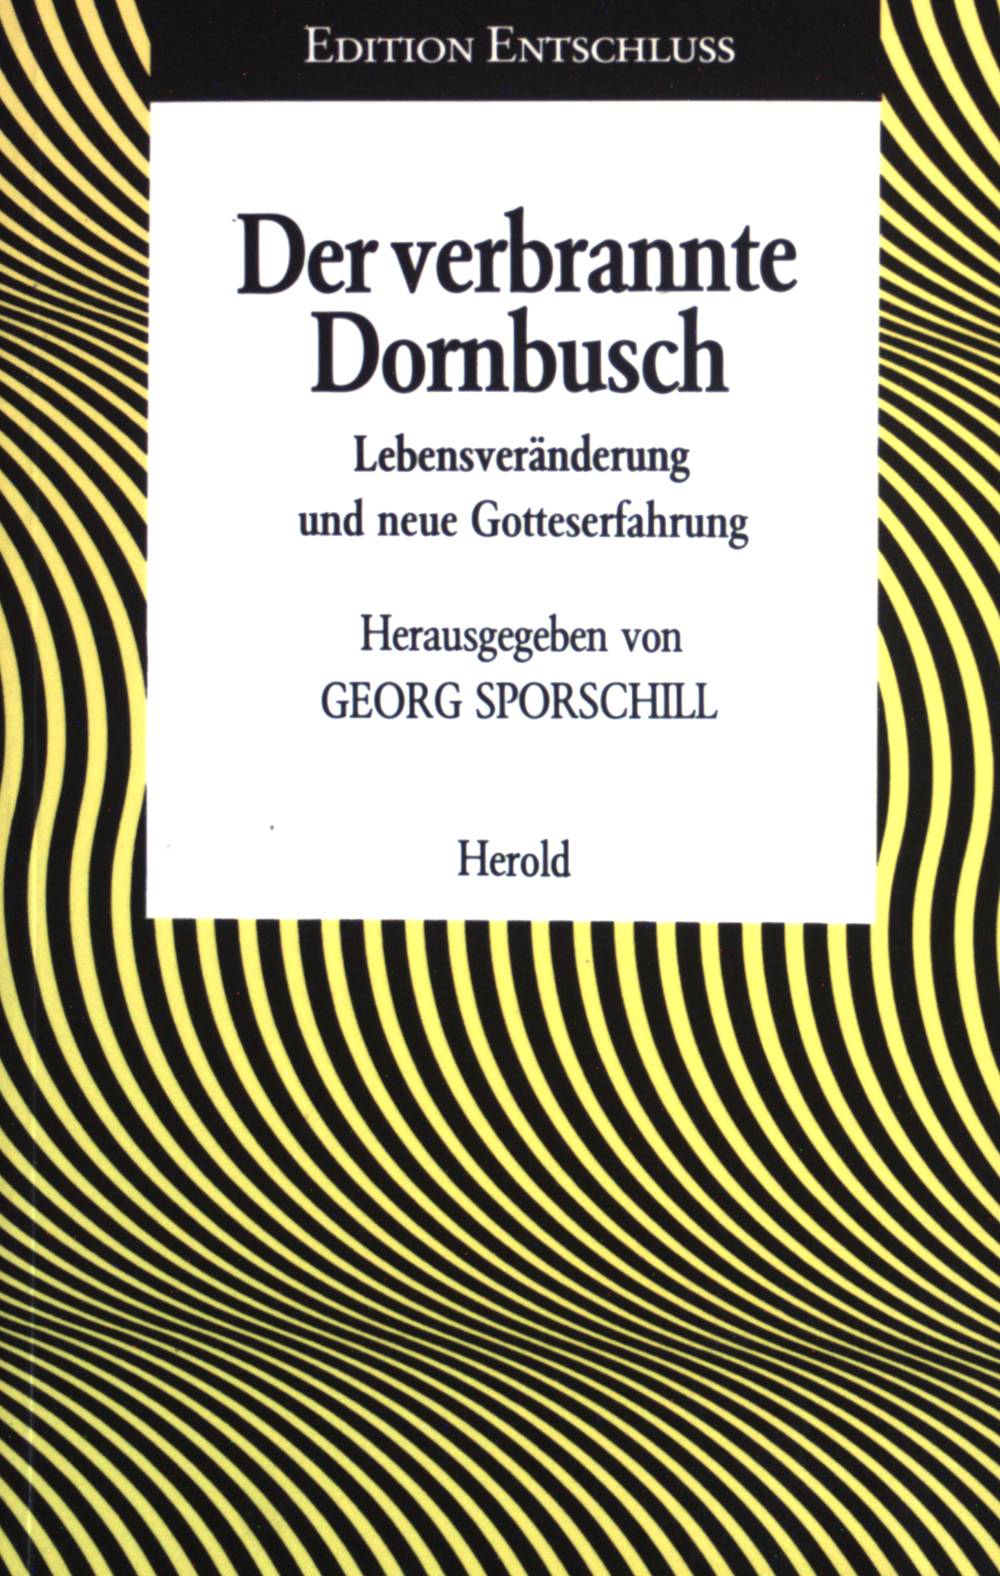 Der verbrannte Dornbusch : Lebensveränderung u. neue Gotteserfahrung. Edition Entschluss ; Bd. 2. - Sporschill, Georg (Herausgeber)